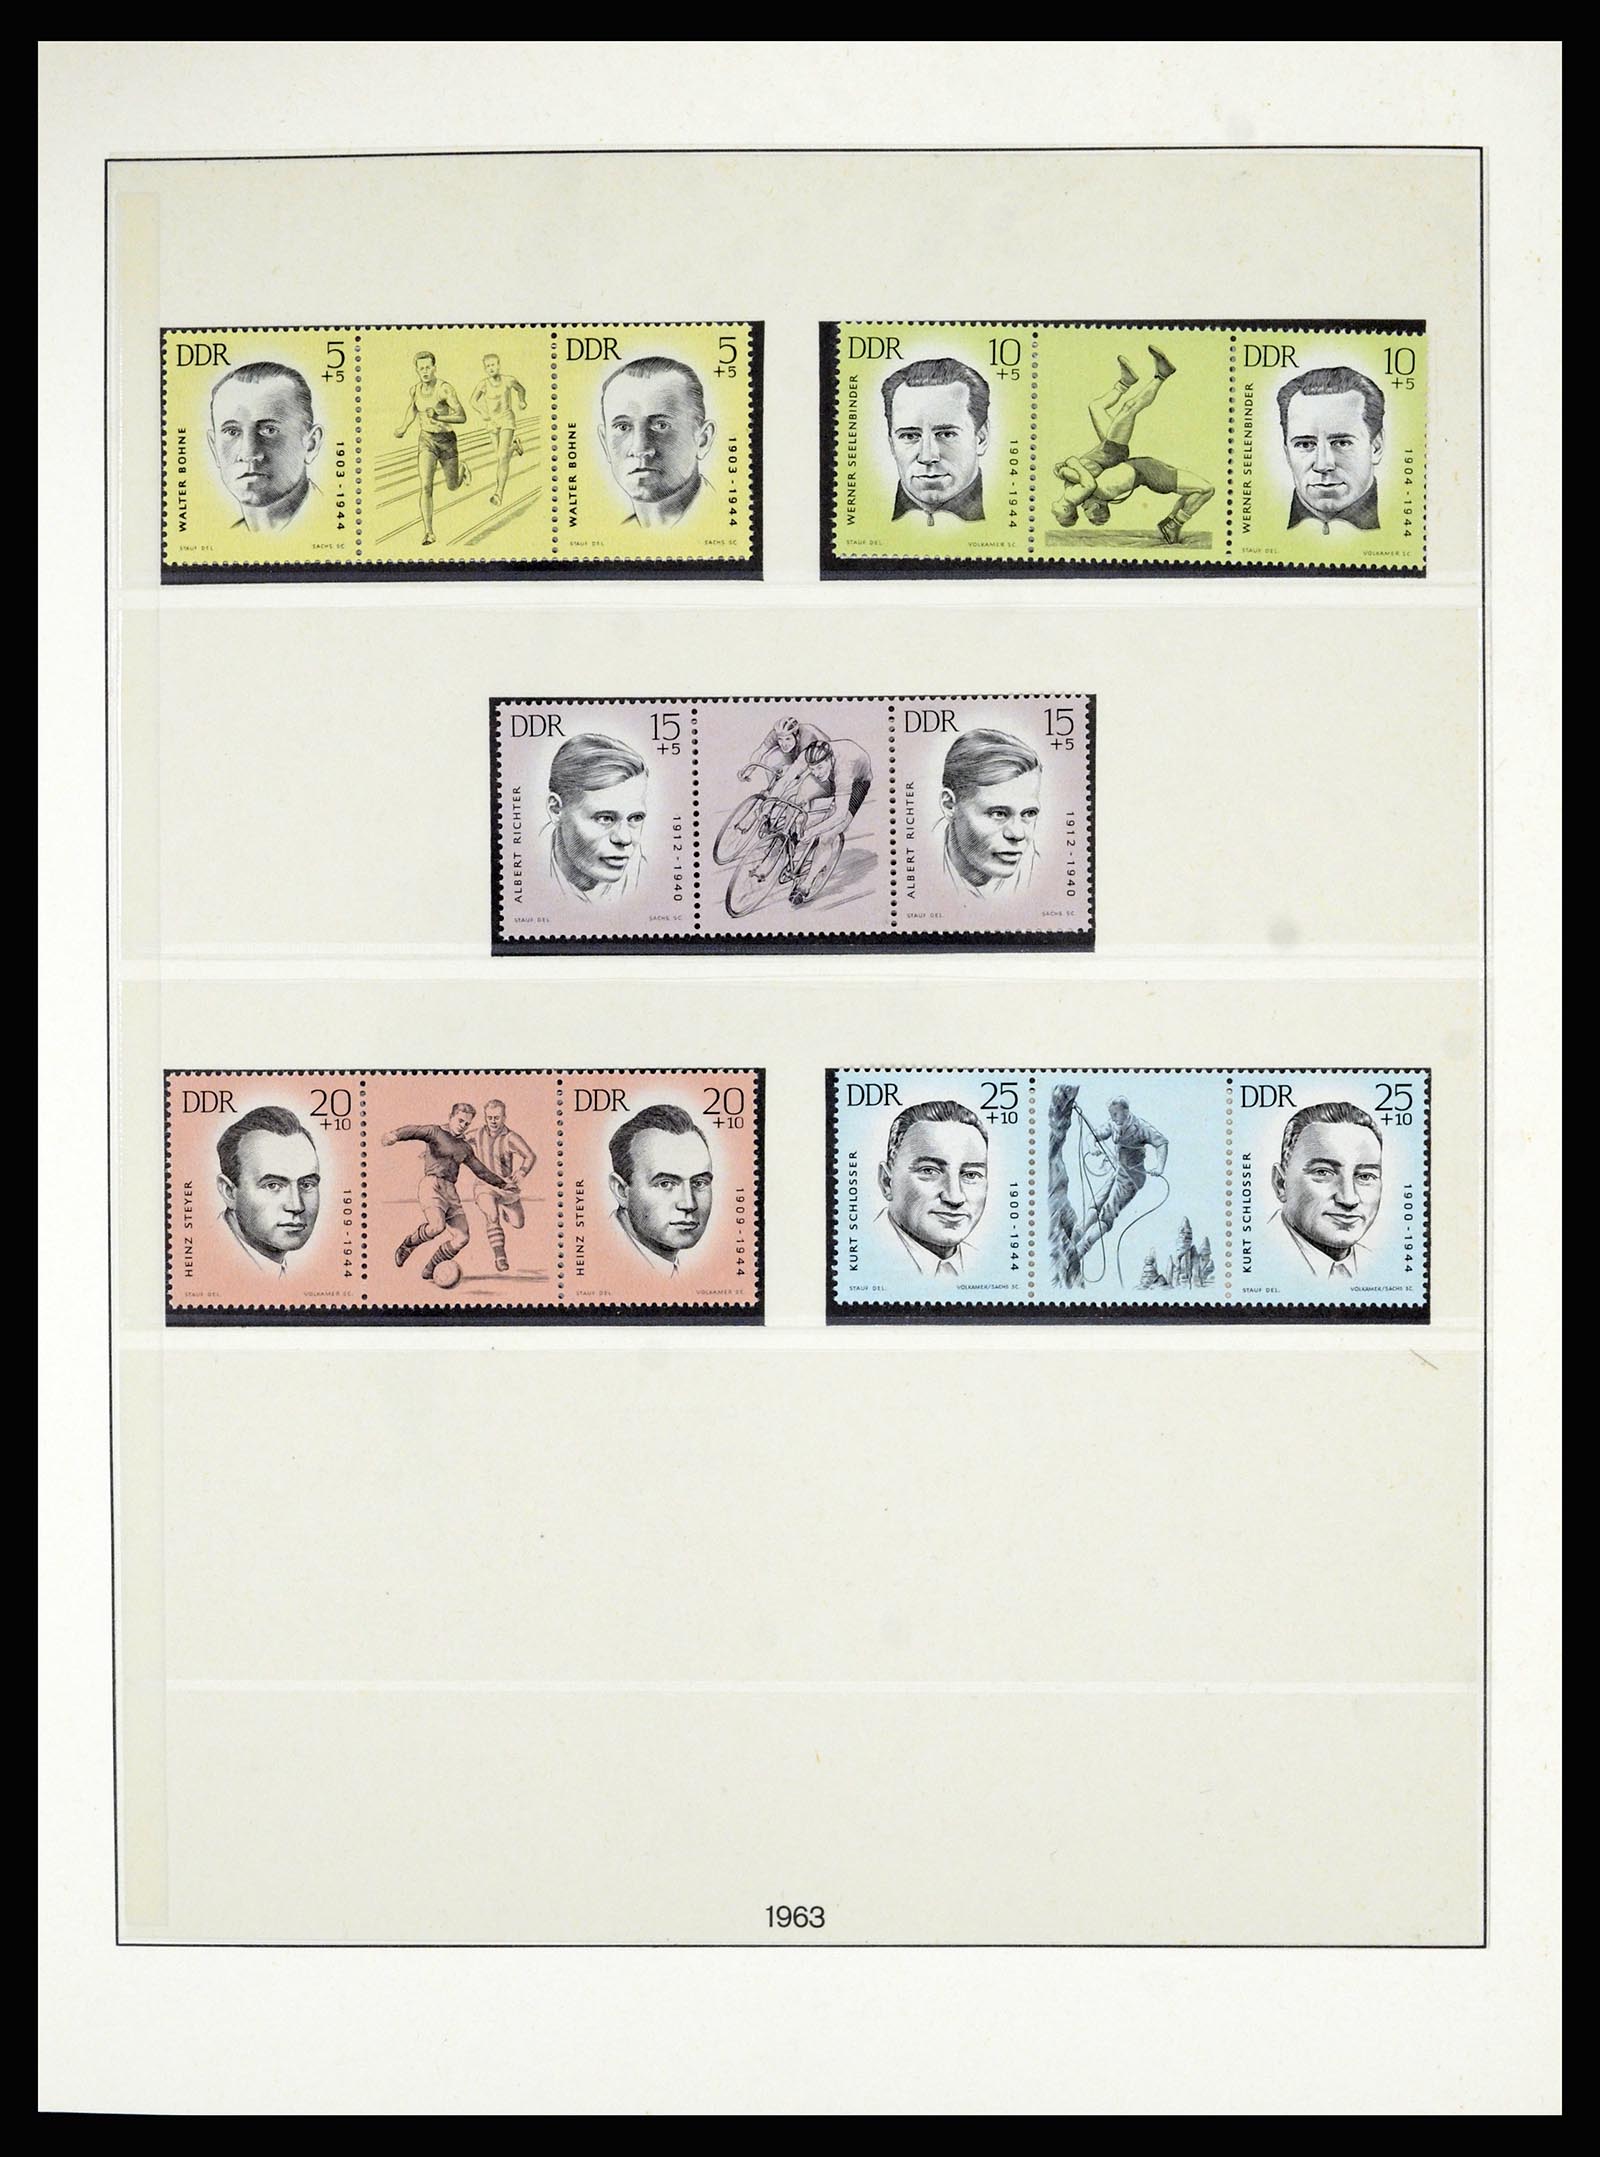 36879 018 - Postzegelverzameling 36879 DDR combinaties 1955-1981.